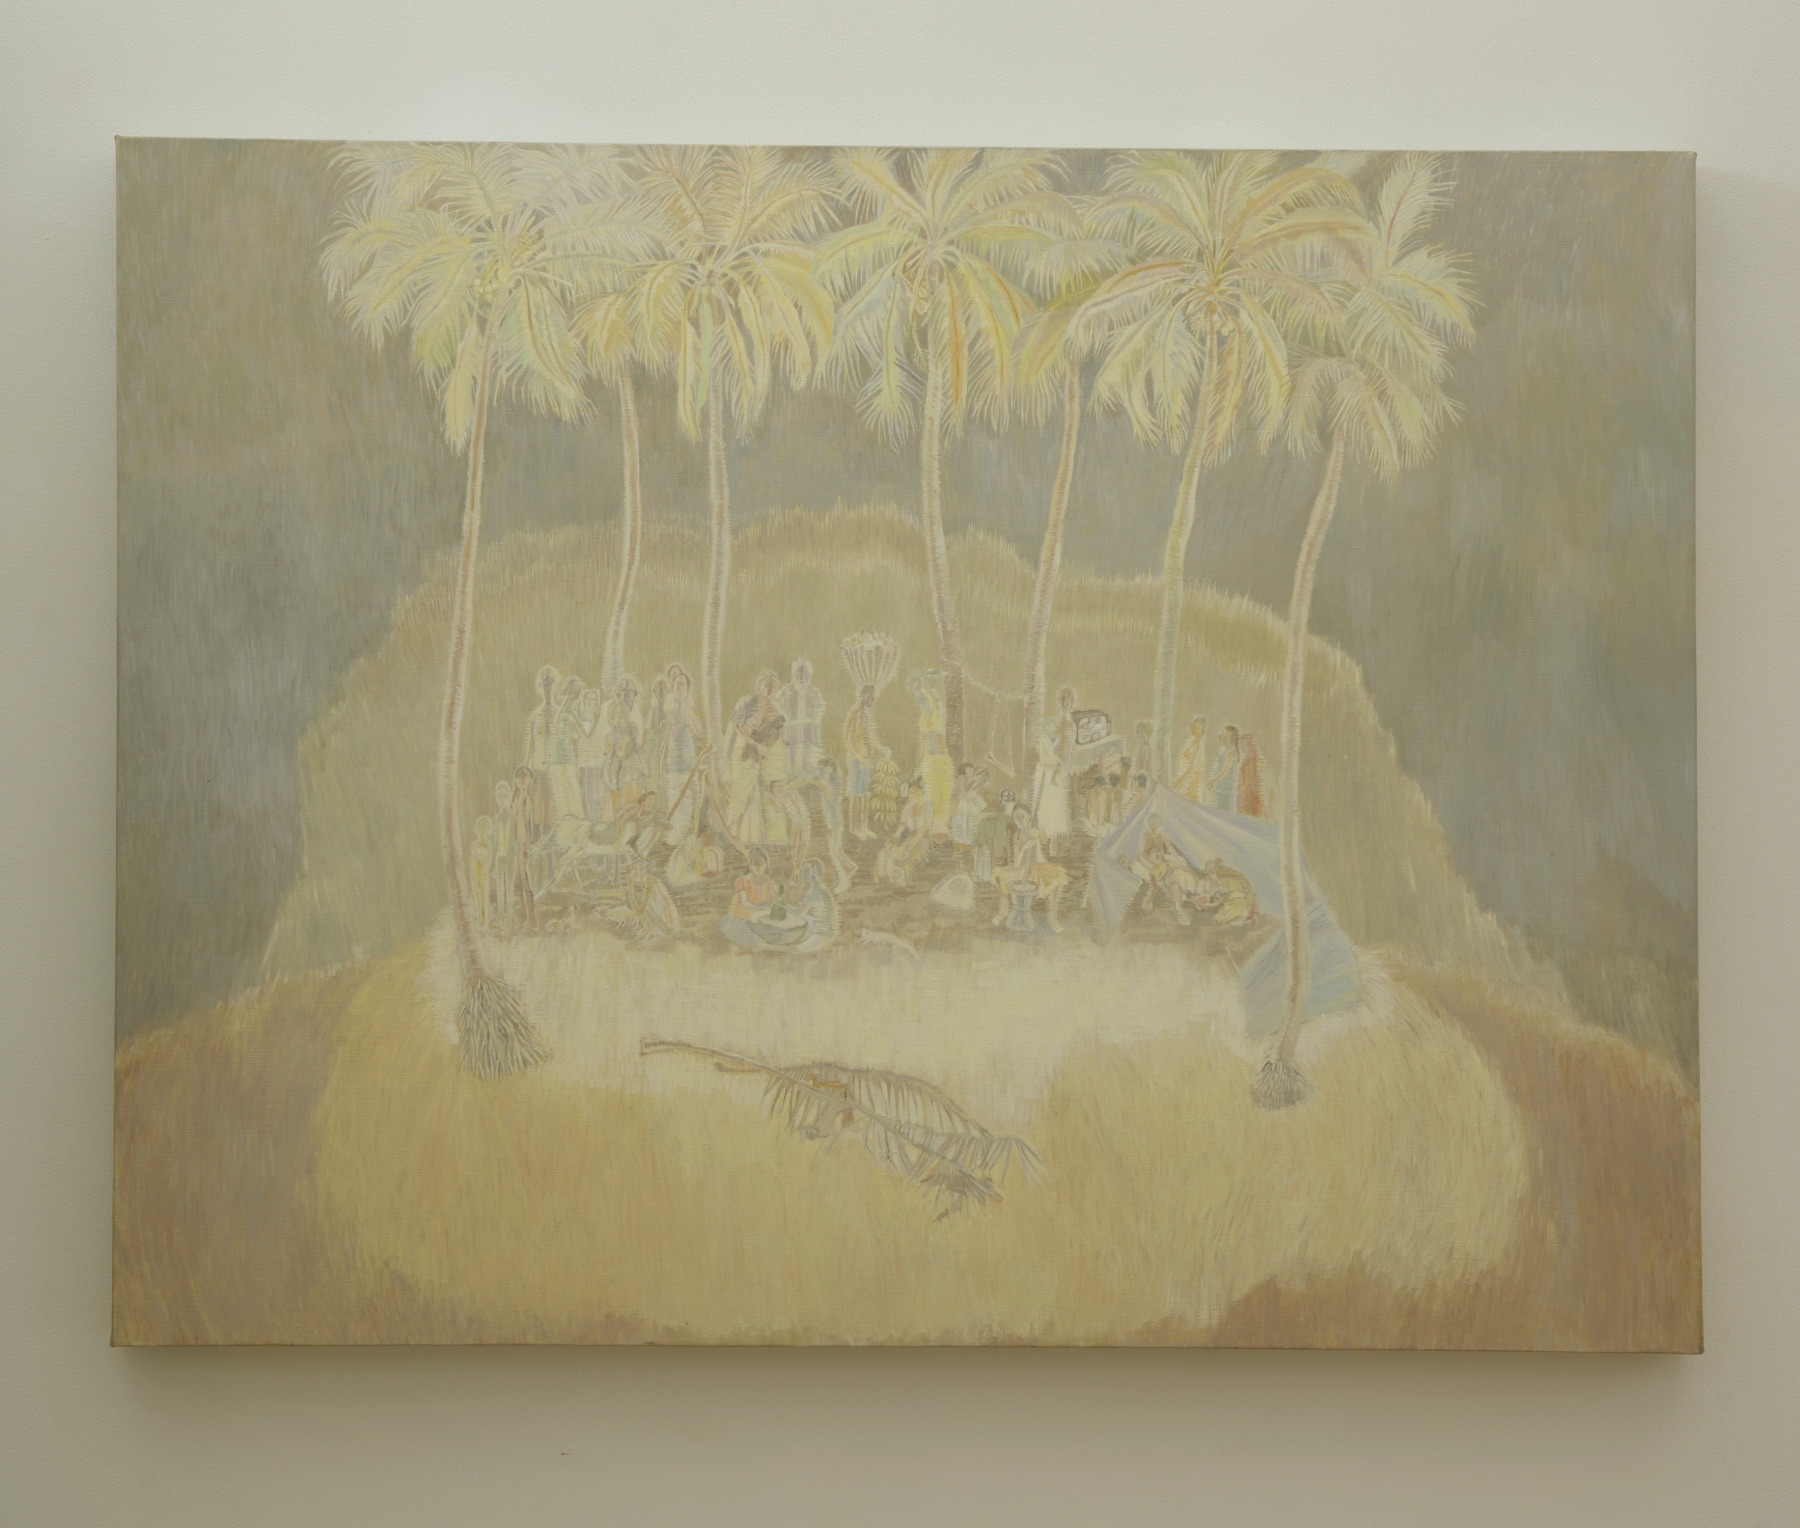 SIJI KRISHNAN&amp;nbsp;

Untitled, 2020

Oil on canvas

34.8 x 45.8 in / 88.5 x 116.5 cm